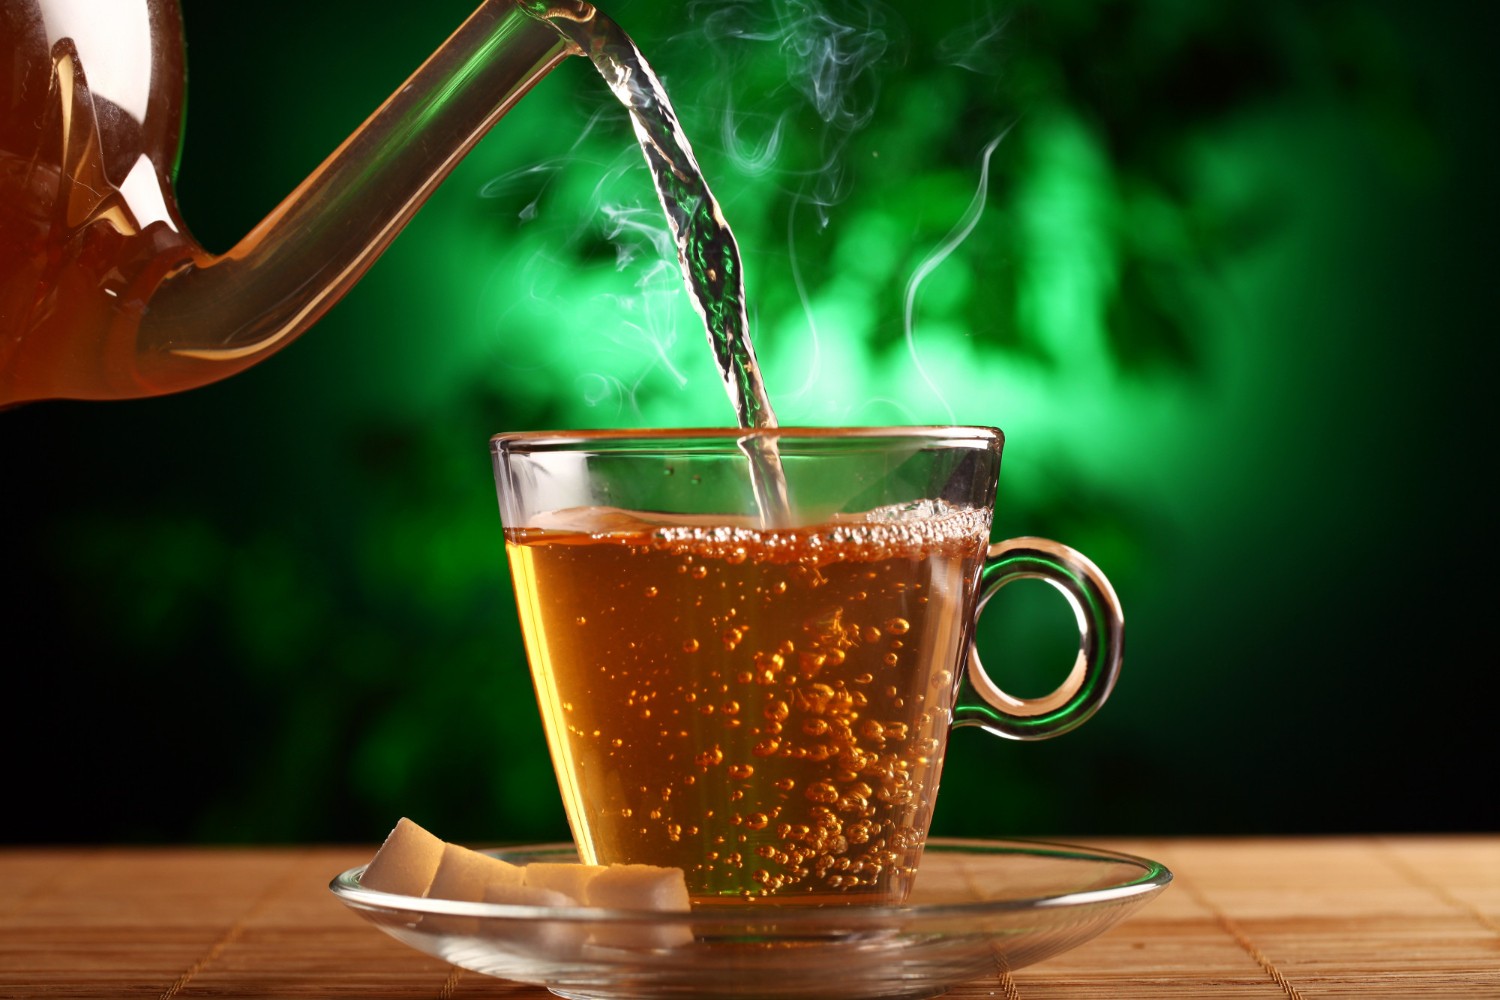 Veja o chá como uma bebida que merece ser degustada, apreciada, por que é, simplesmente, uma bebida gostosa (Foto: Freepik / Racool_studio / CreativeCommons)